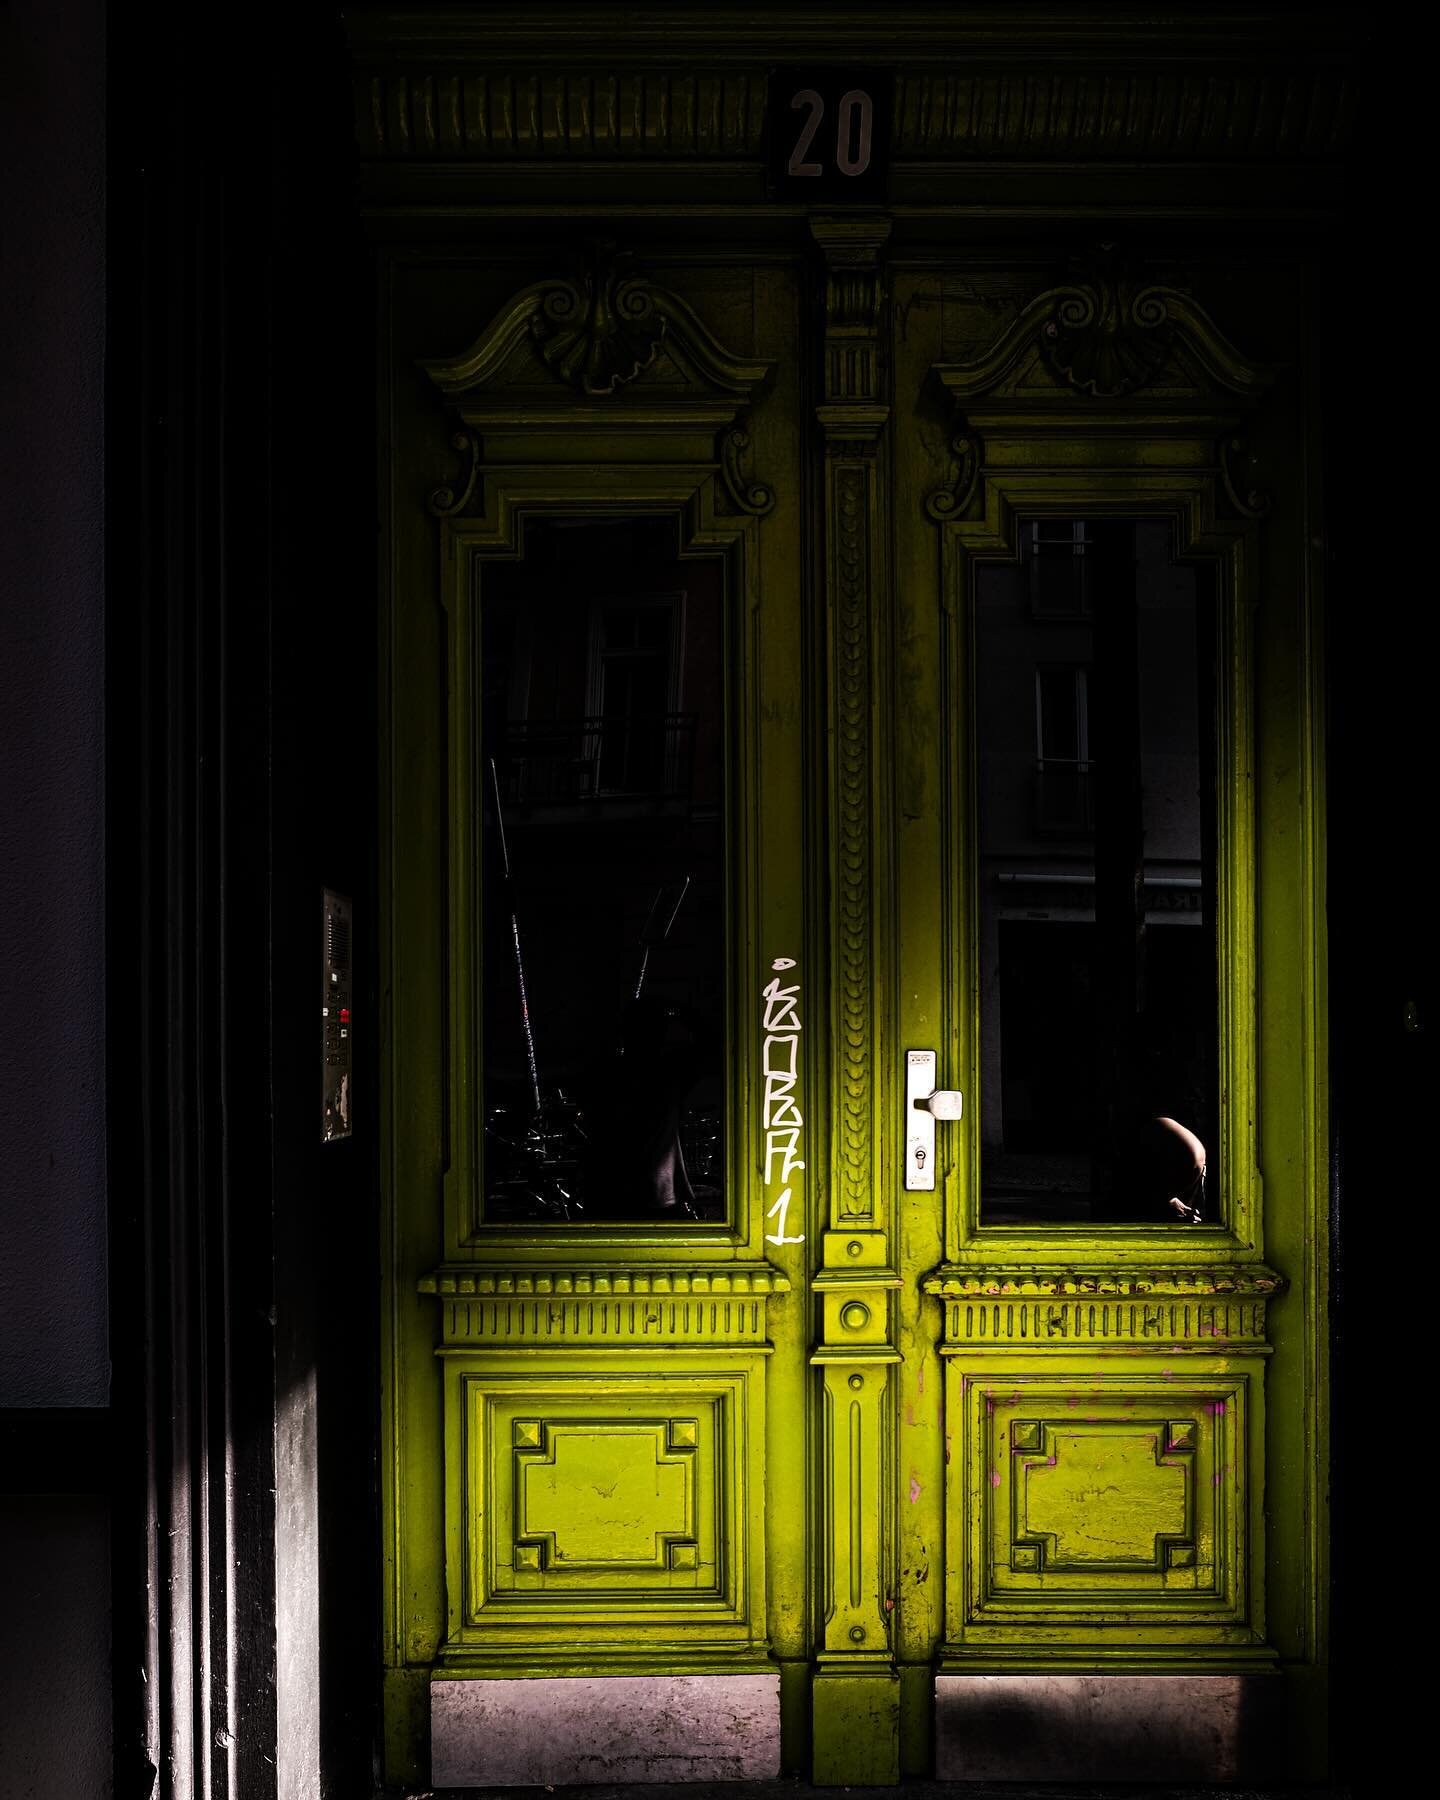 I want to walk around and just take photos of these quirky Berlin doors. 
.
.
.

#greendoor #porteverte #greendoors #portesvertes #green #doorstagram #instadoor #instadoors #doorwanderlust #doorsgraphy #doorsoffrance #standingatyourdoor #wanderlust #